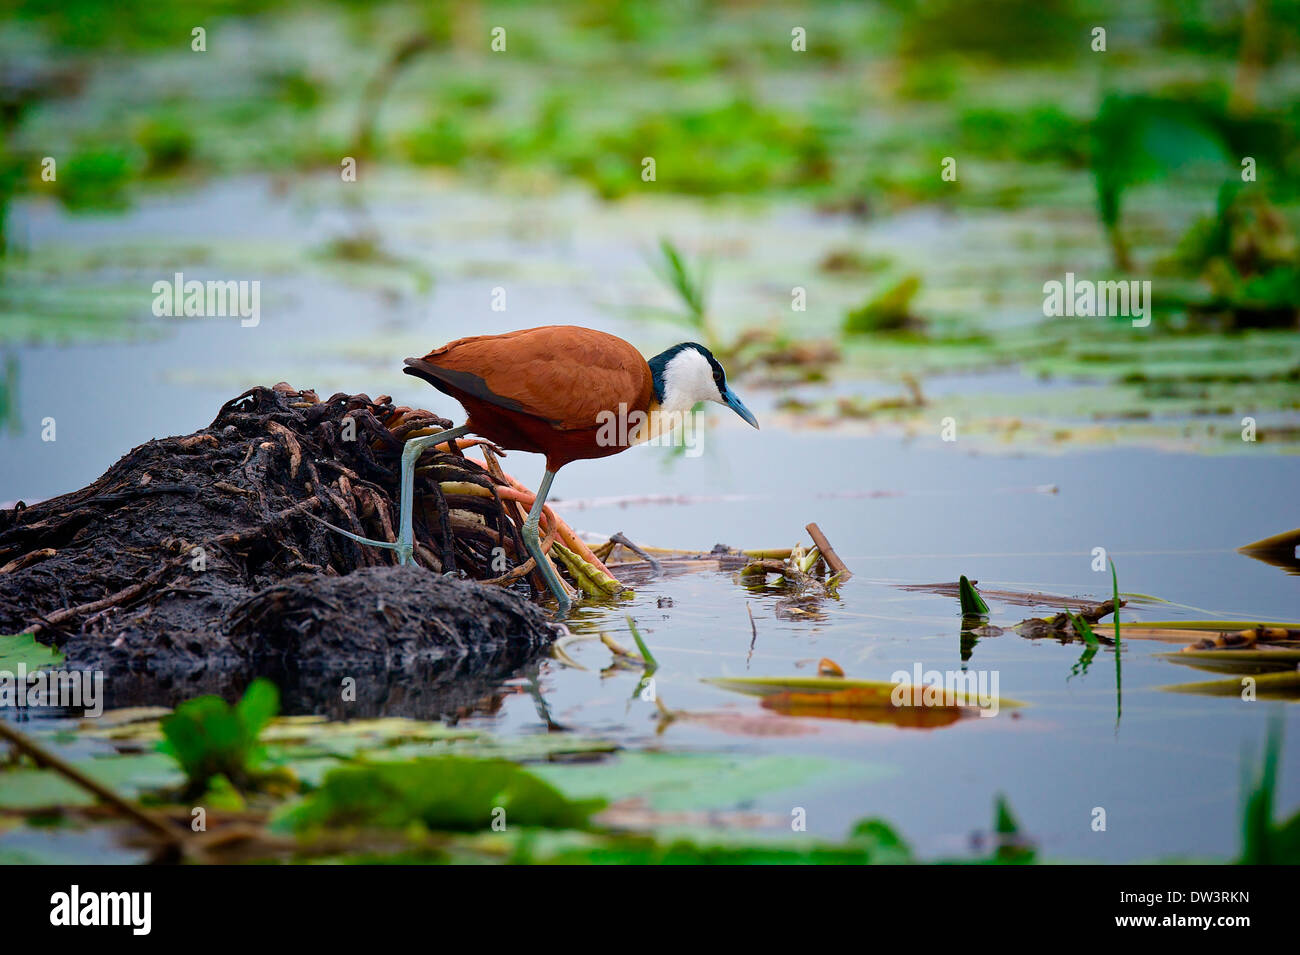 Eine native Wathose geht das afrikanische Blatthühnchen (Actophilornis Africanus) durch Seerosen in einem ugandischen Sumpf, ihrem natürlichen Lebensraum. Stockfoto